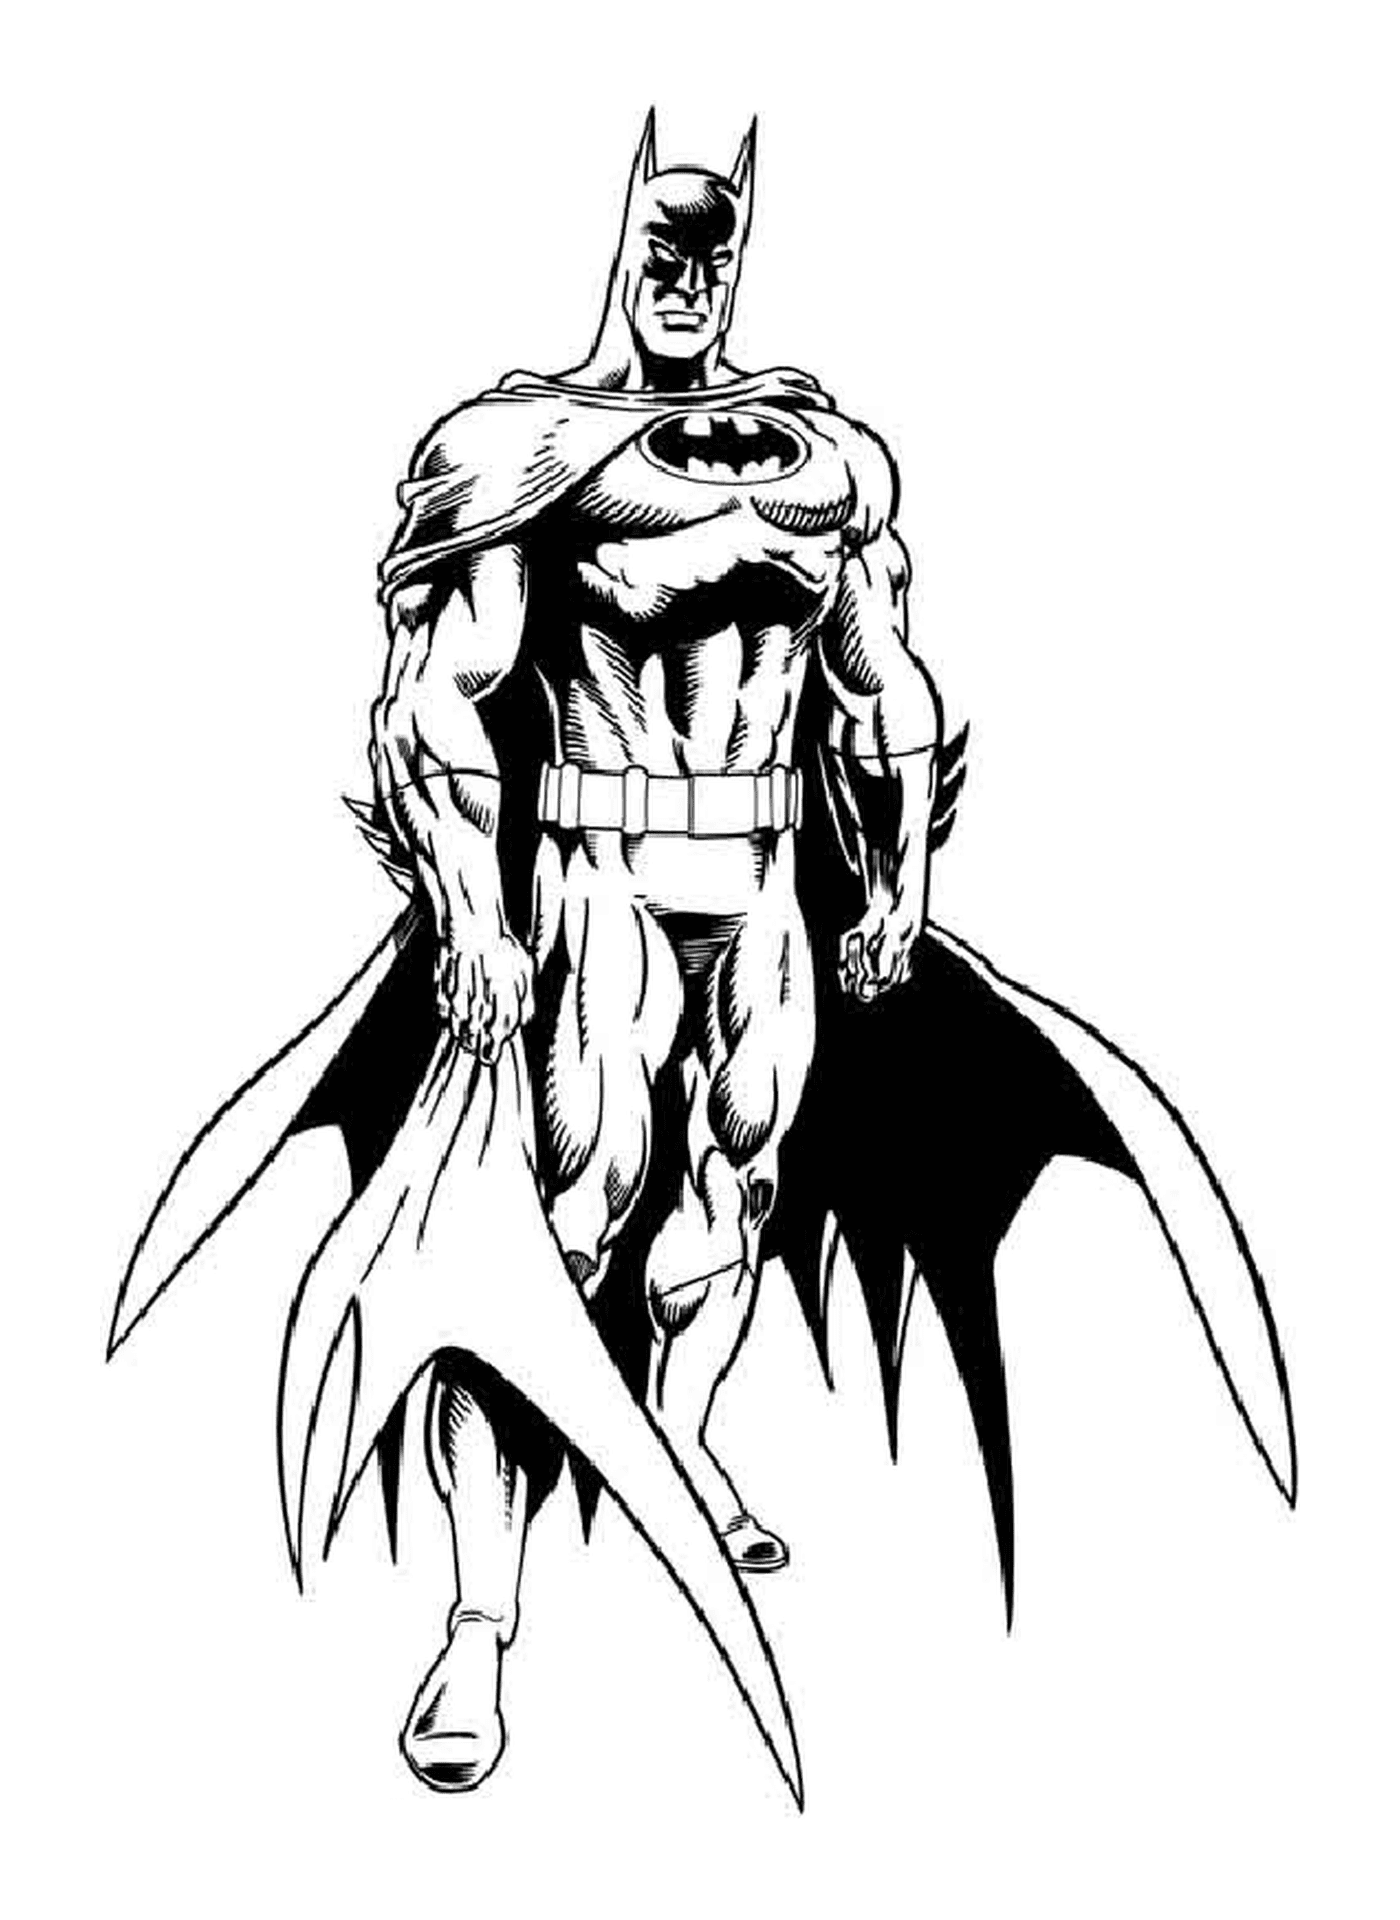  Batman with his cape holding a gun 